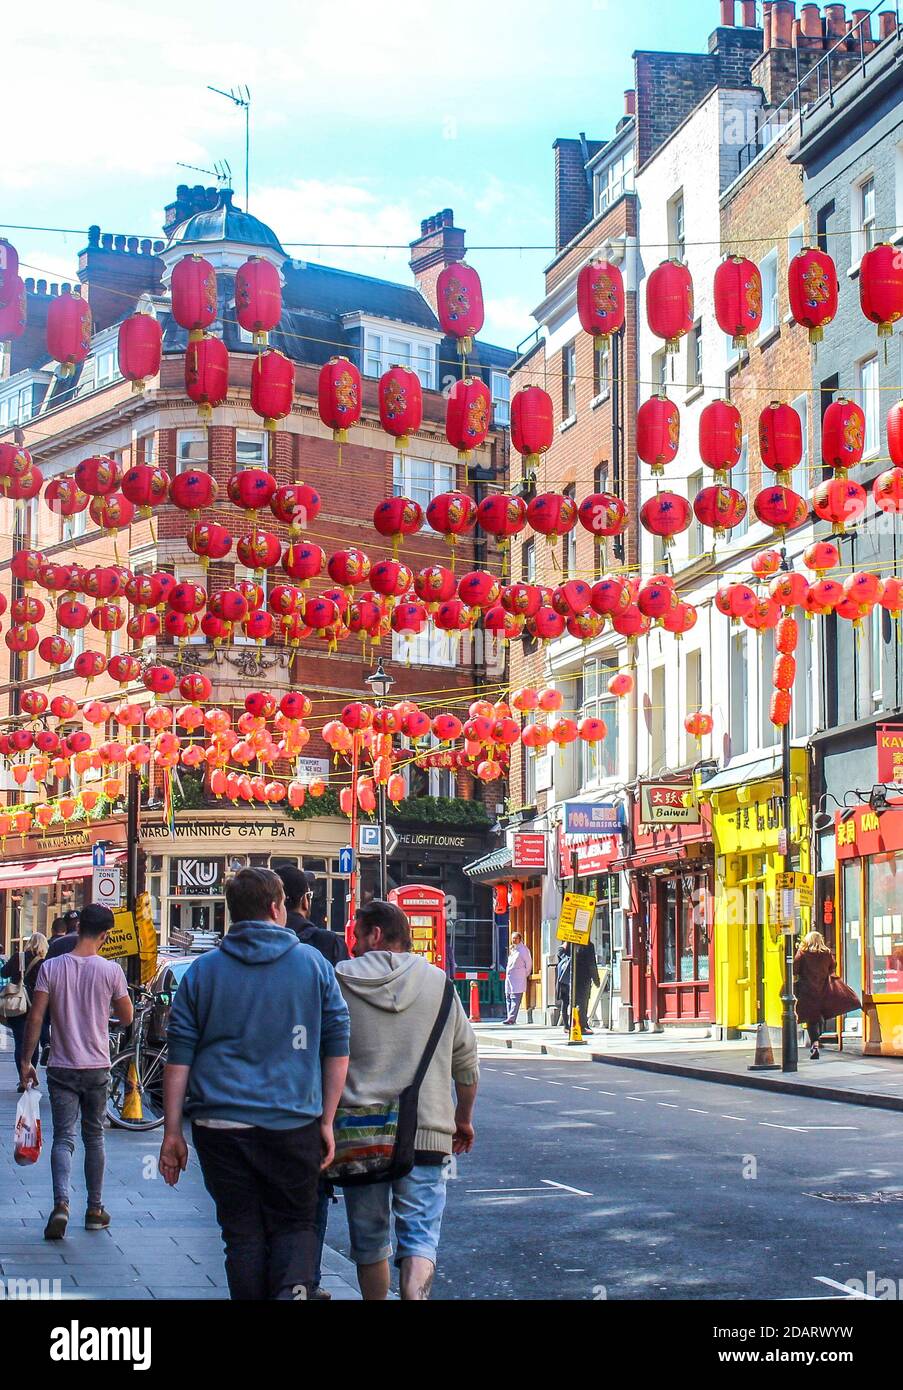 LONDRES - Royaume-Uni - 03 mai 2018 : vue de China Town à Londres. China Town - l'une des principales attractions touristiques de Londres Banque D'Images